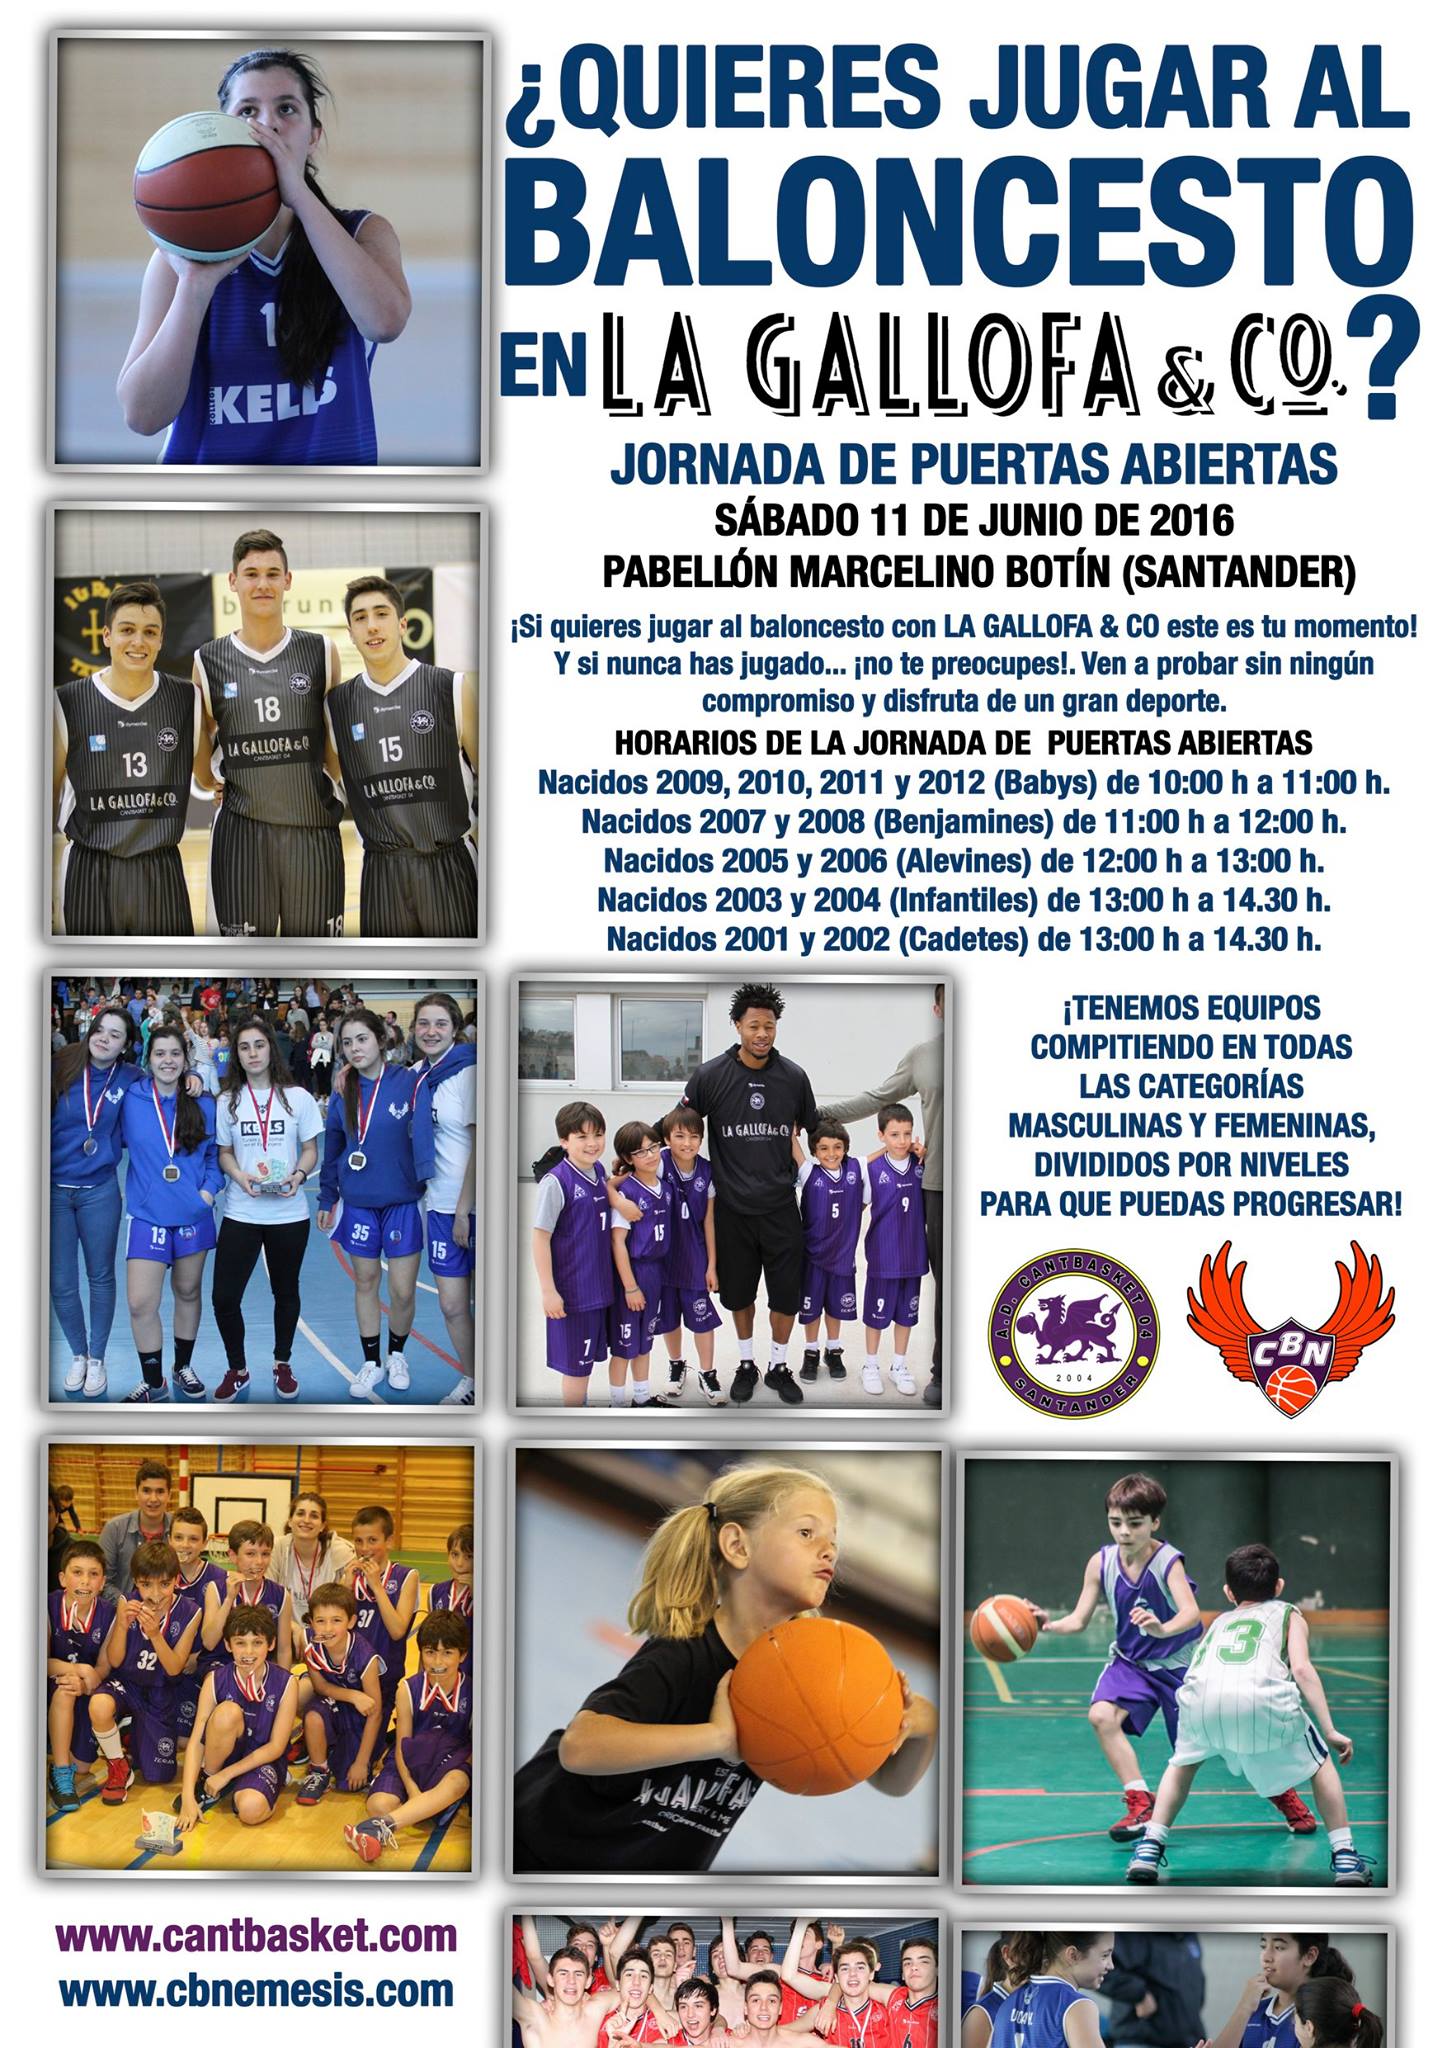 Jornada de Puertas Abiertas en el Pabellón Marcelino Botín – Cantbasket 04  Santander